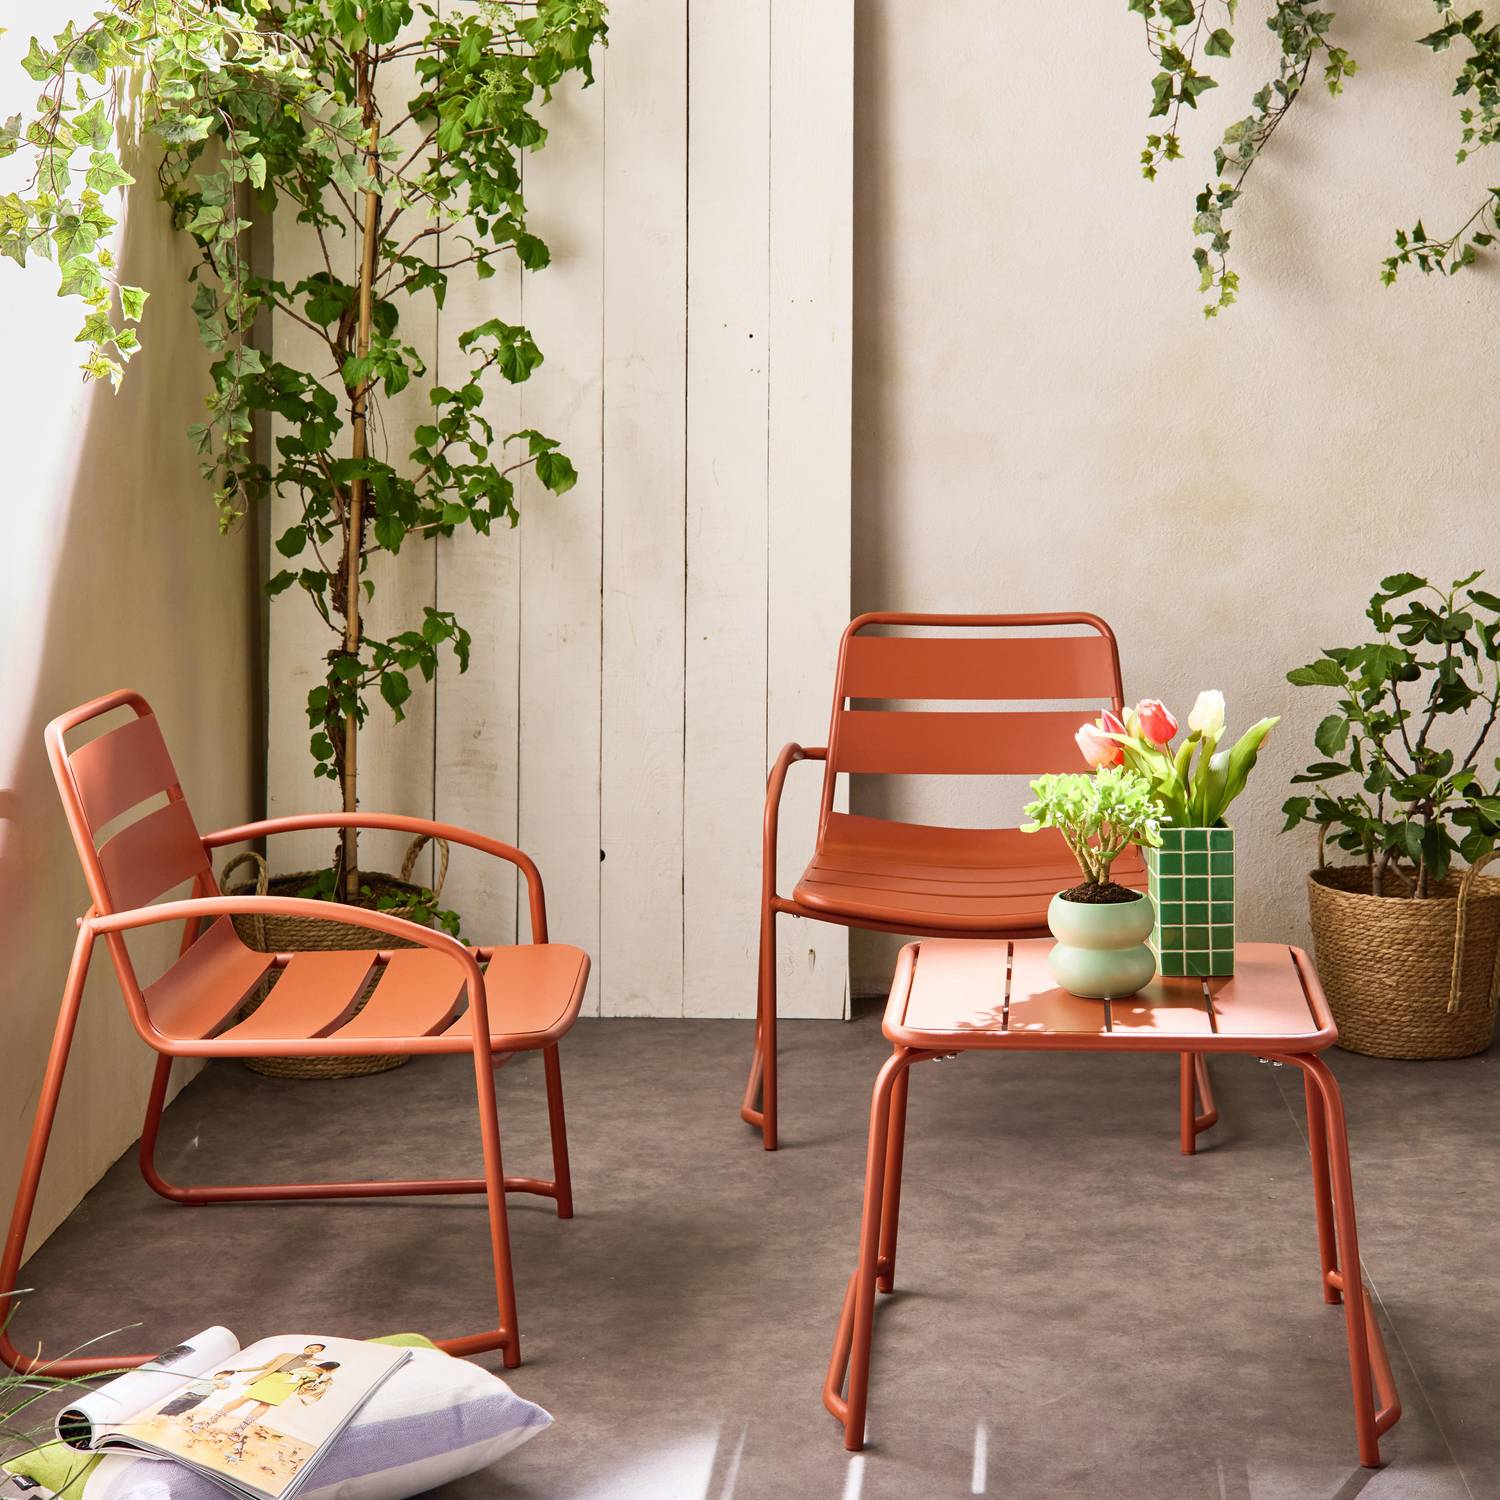 Metall-Gartenset 2 Personen - Terrakotta - 2 Sessel 1 Beistelltisch - Suzana Photo2